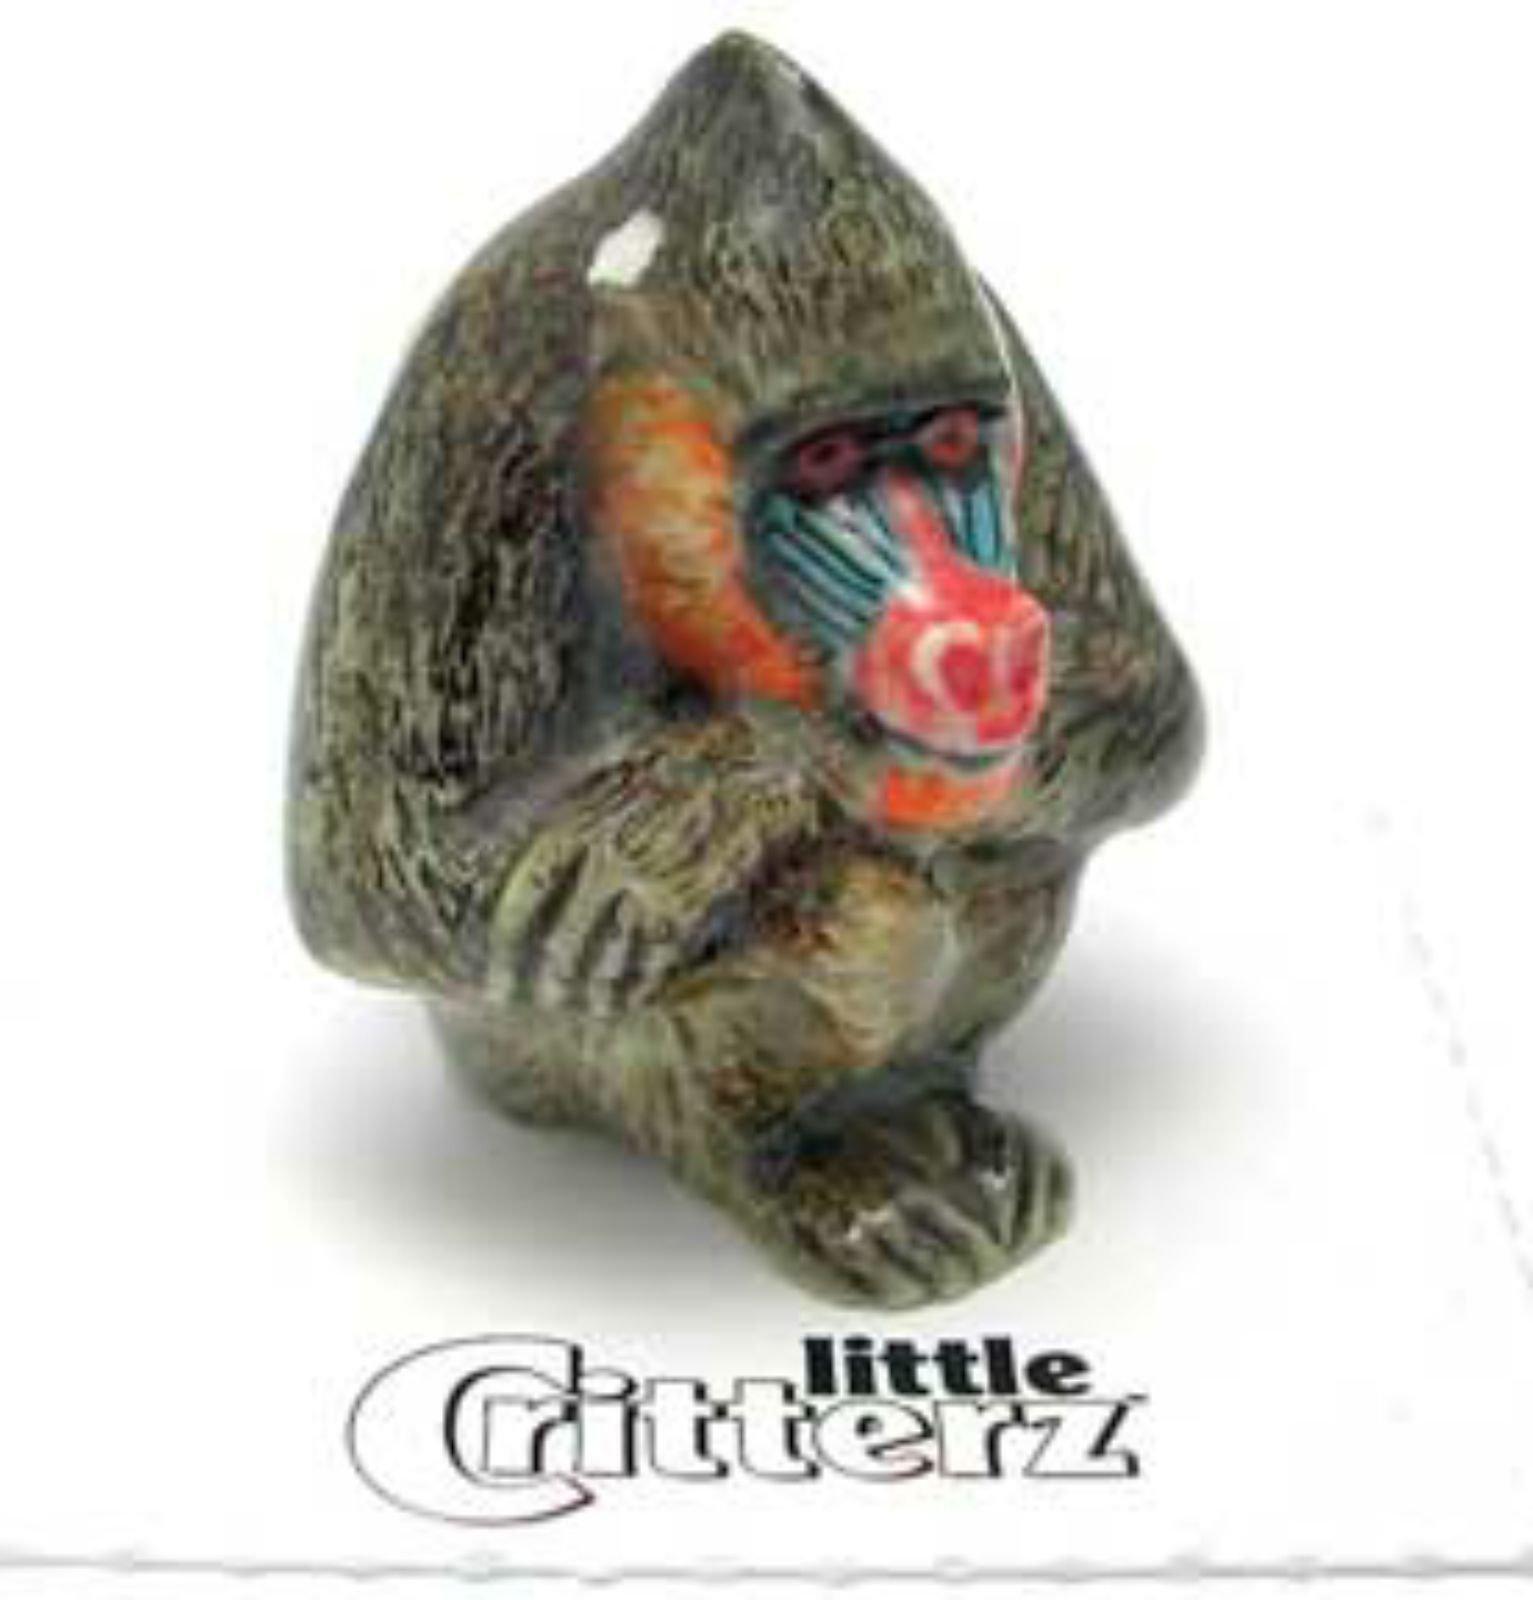 Little Critterz Miniature Porcelain Animal Figure Mandrill \